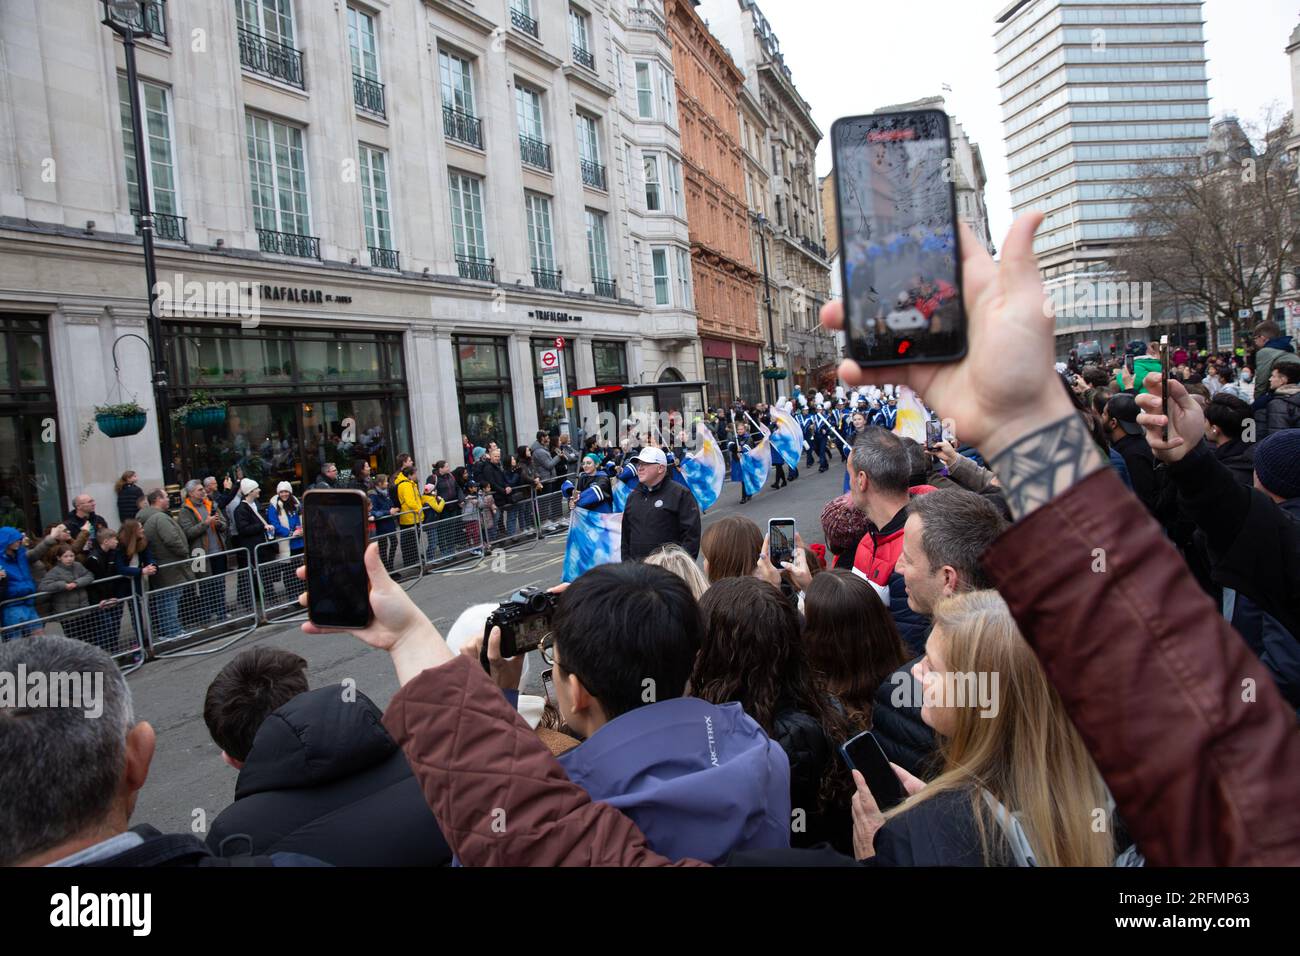 London News Parade du jour de l’an dans le centre de Londres, le jour du nouvel an. Banque D'Images